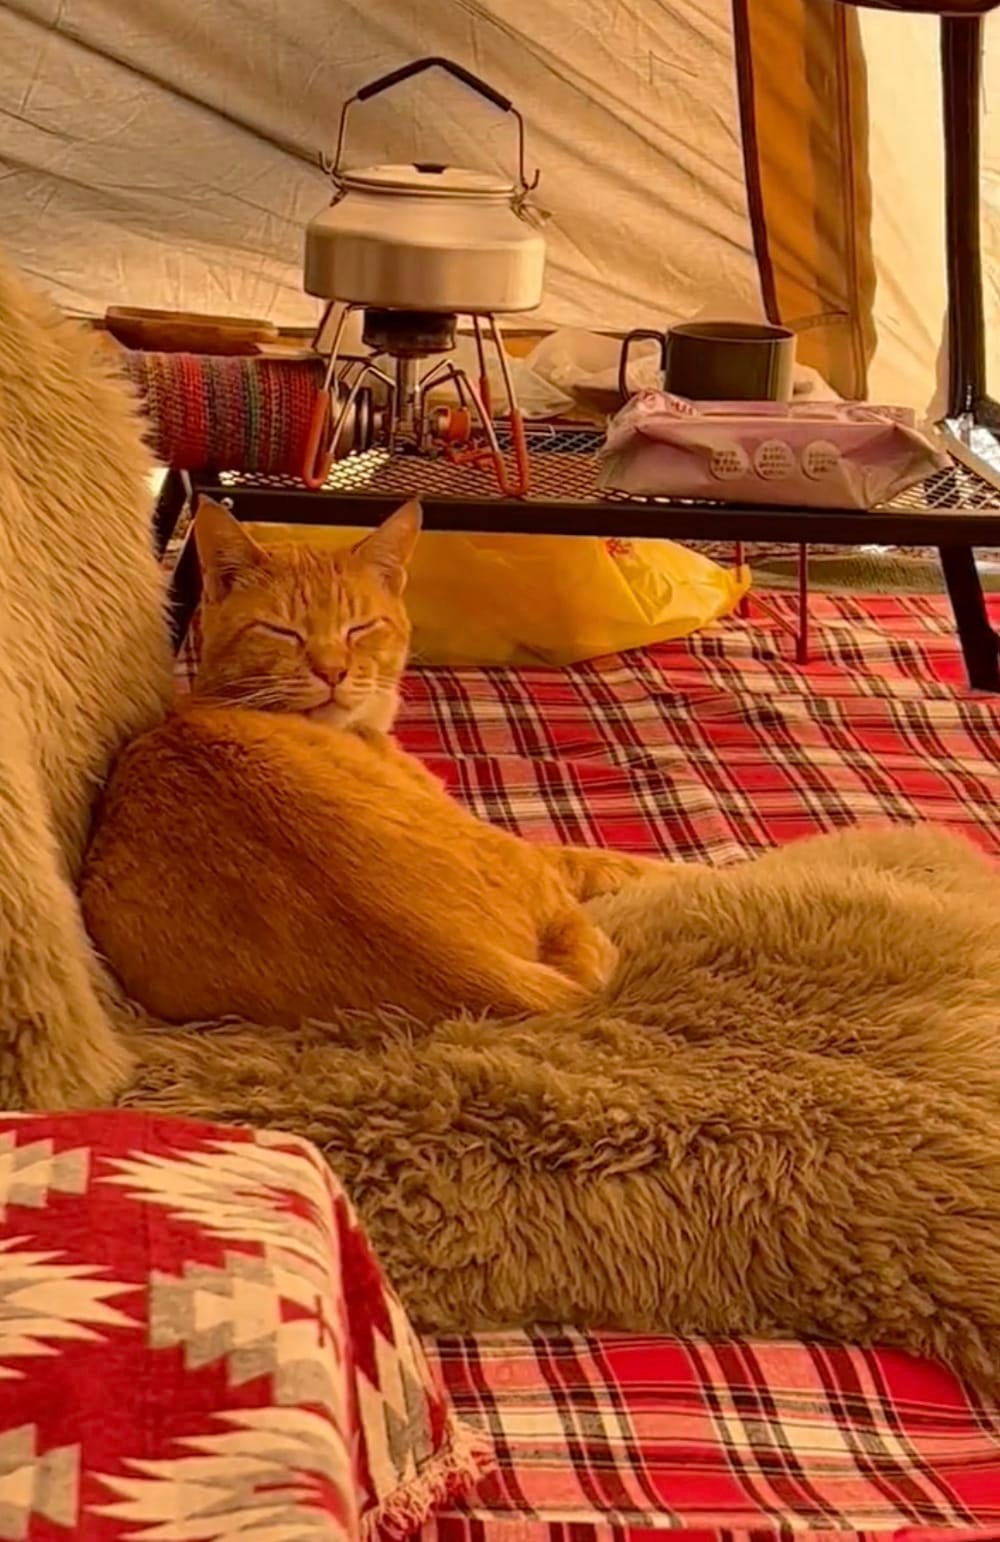 หนุ่มญี่ปุ่นไปตั้งแคมป์ เจอแมวส้มมานอนด้วย